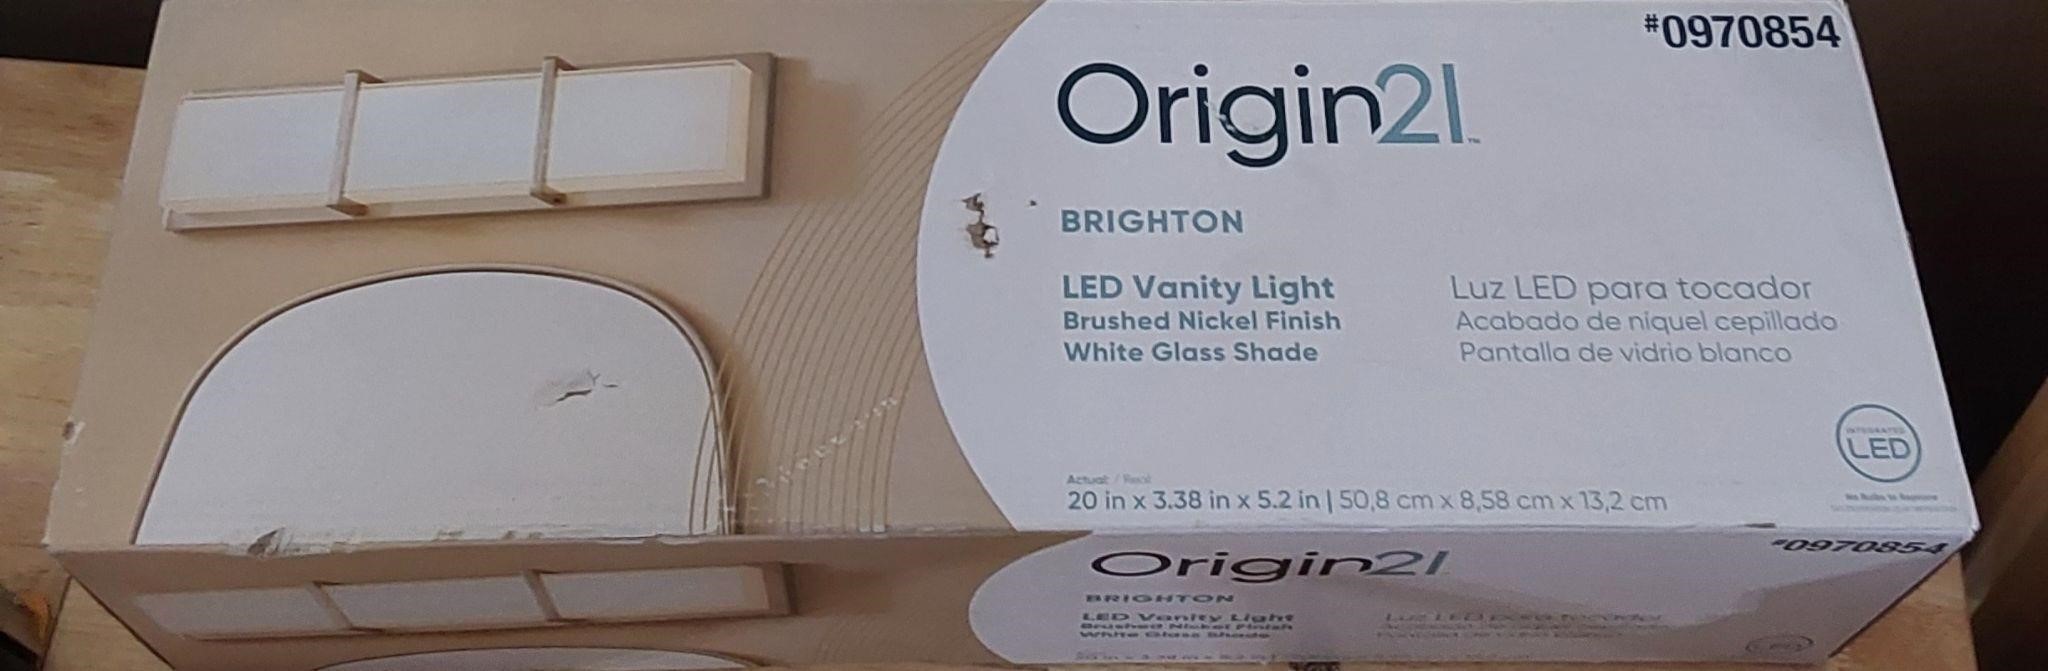 Origin21 LED 20" Vanity Light